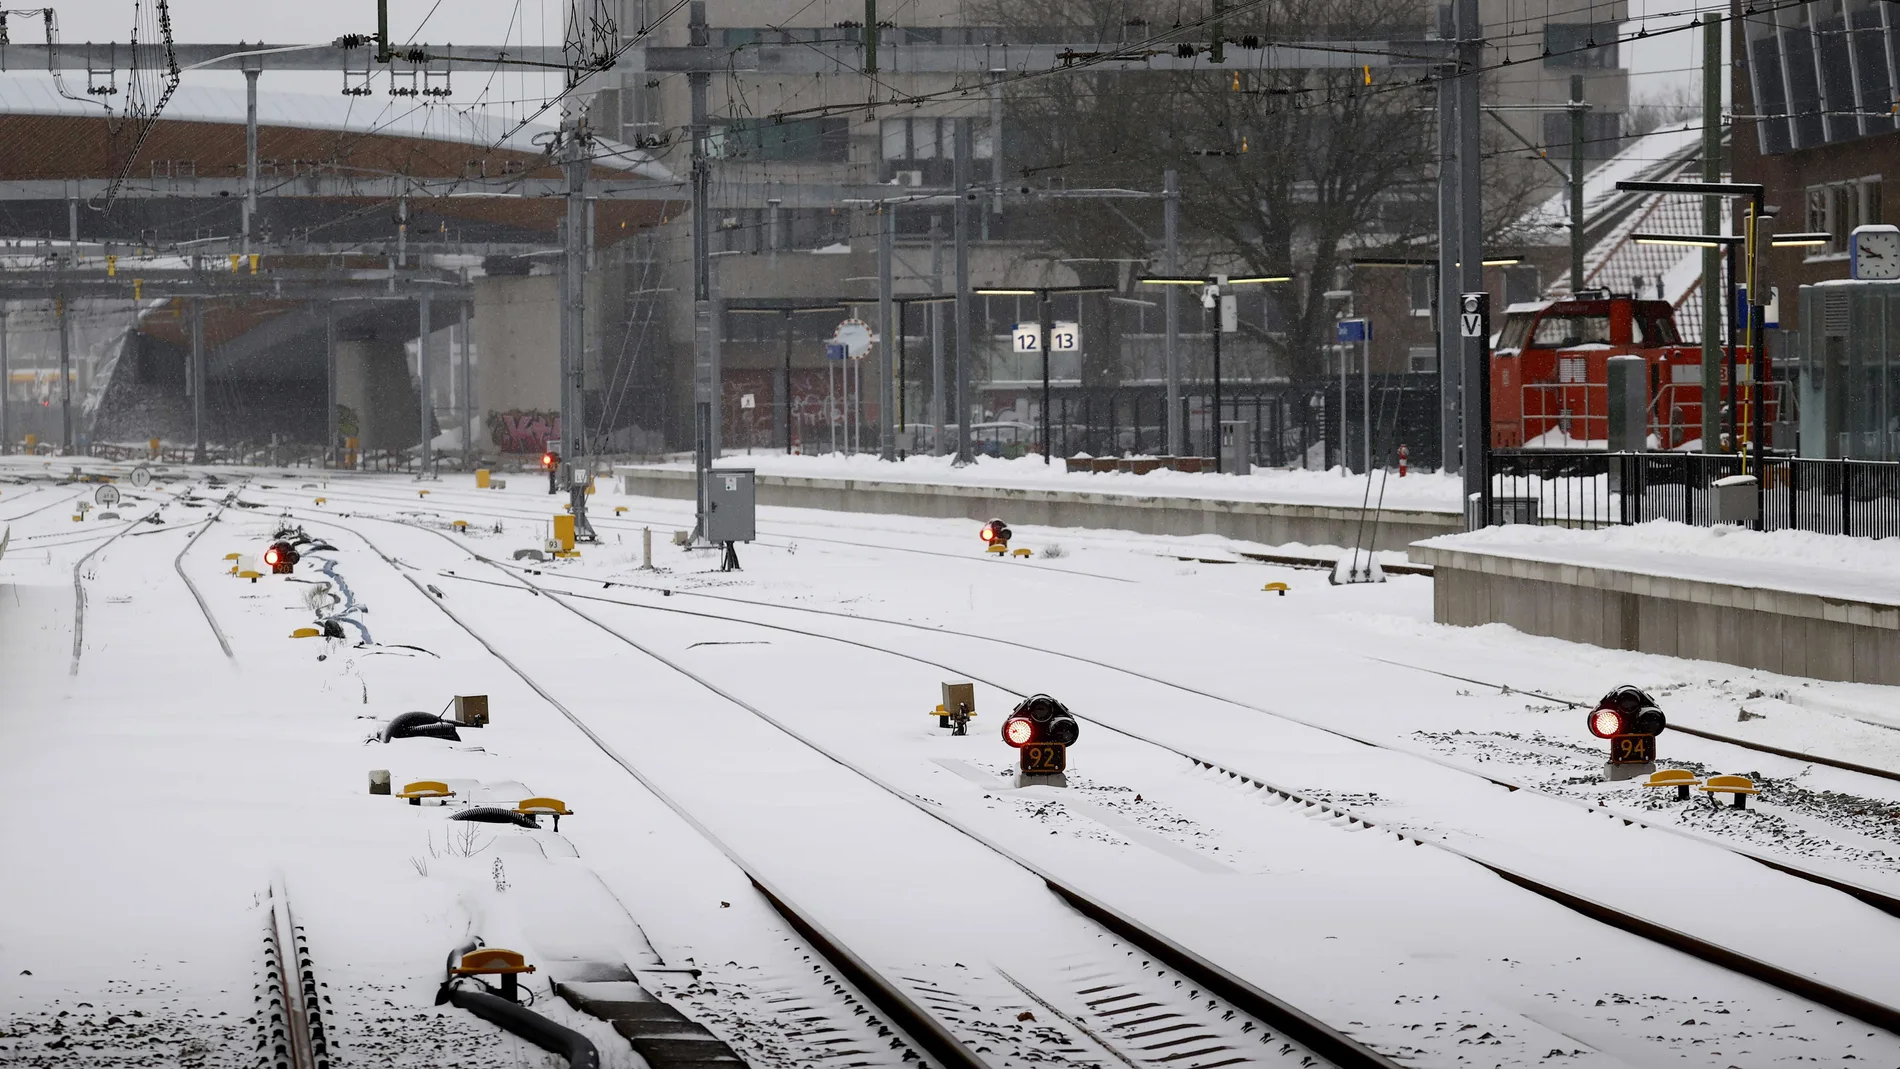 Nieve en los raíles de la estación de Zwolle en Zwolle, Países Bajos